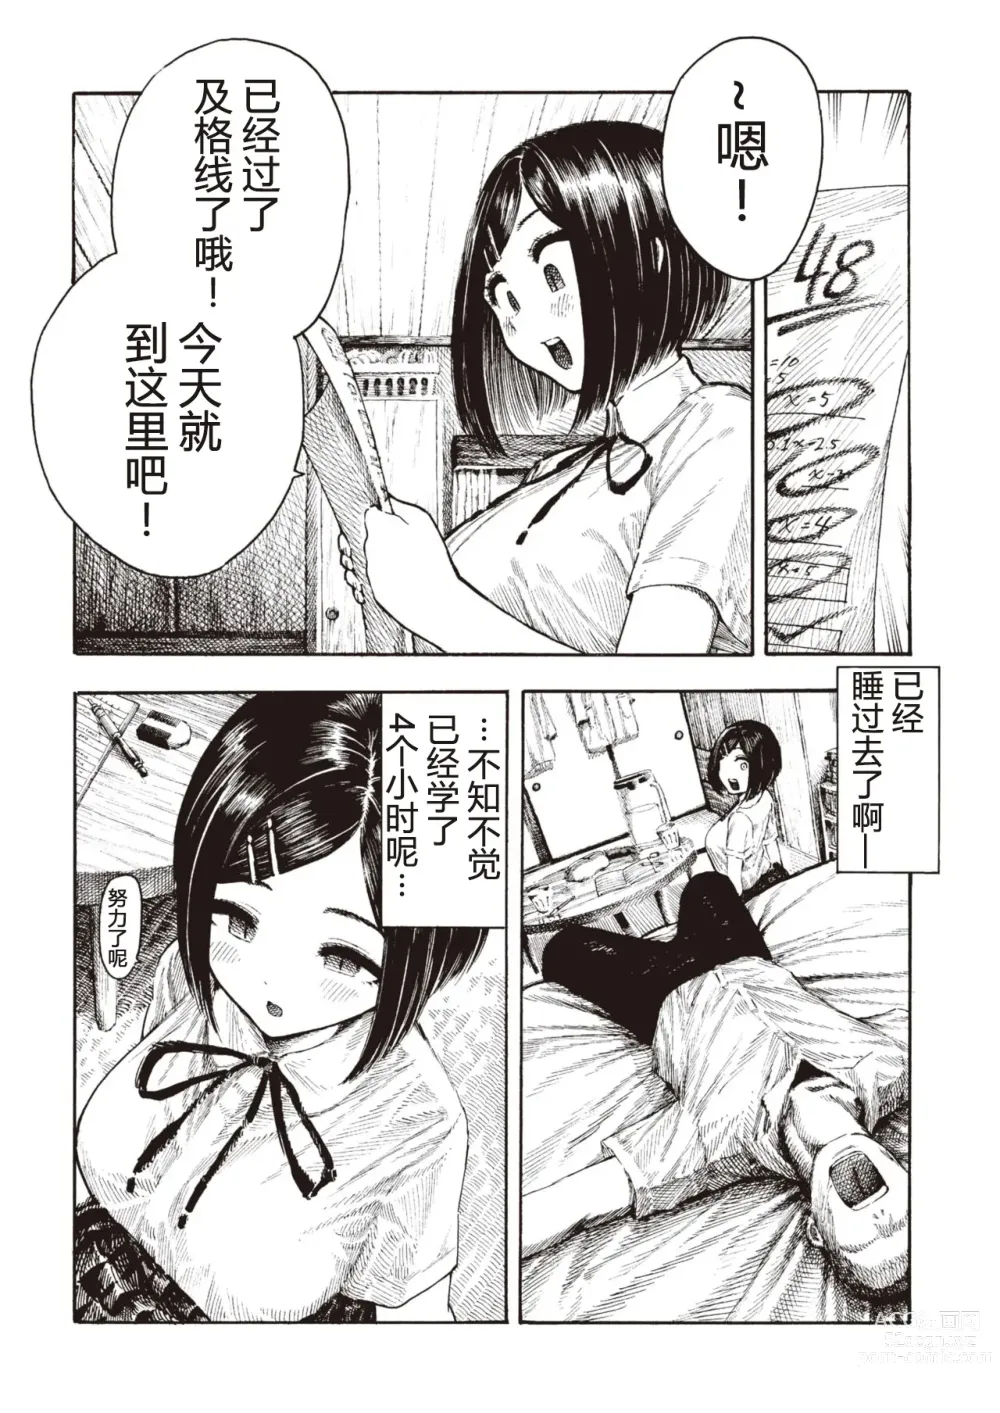 Page 4 of manga Manatsu-chan no Benkyoukai